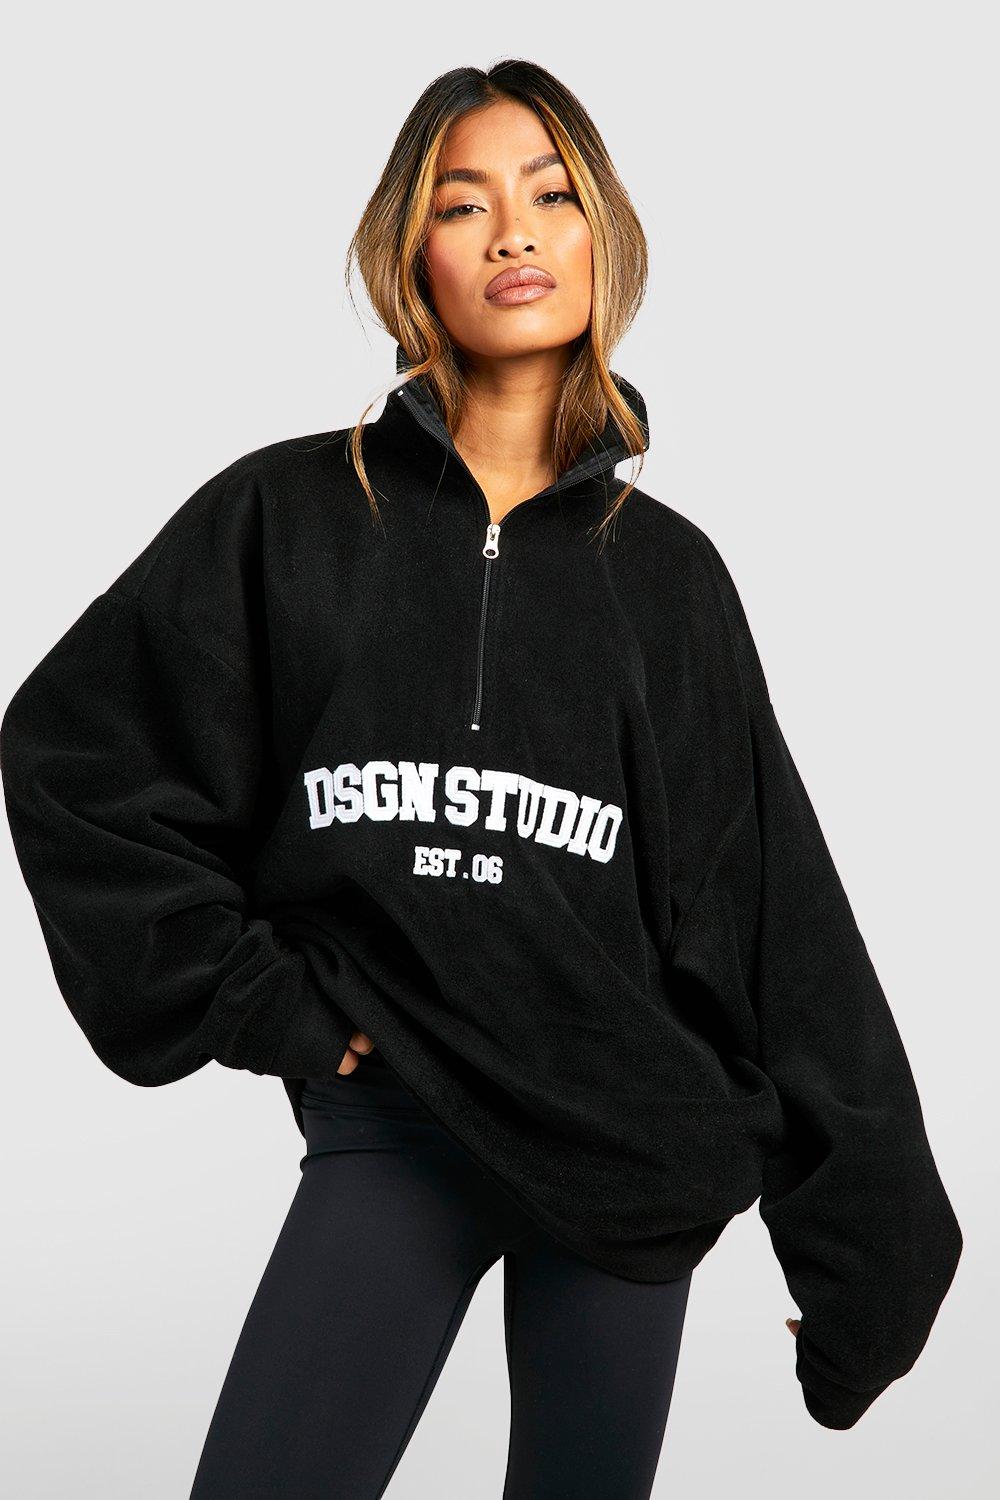 Dsgn Studio Slogan Embroidered Half Zip Oversized Sweatshirt